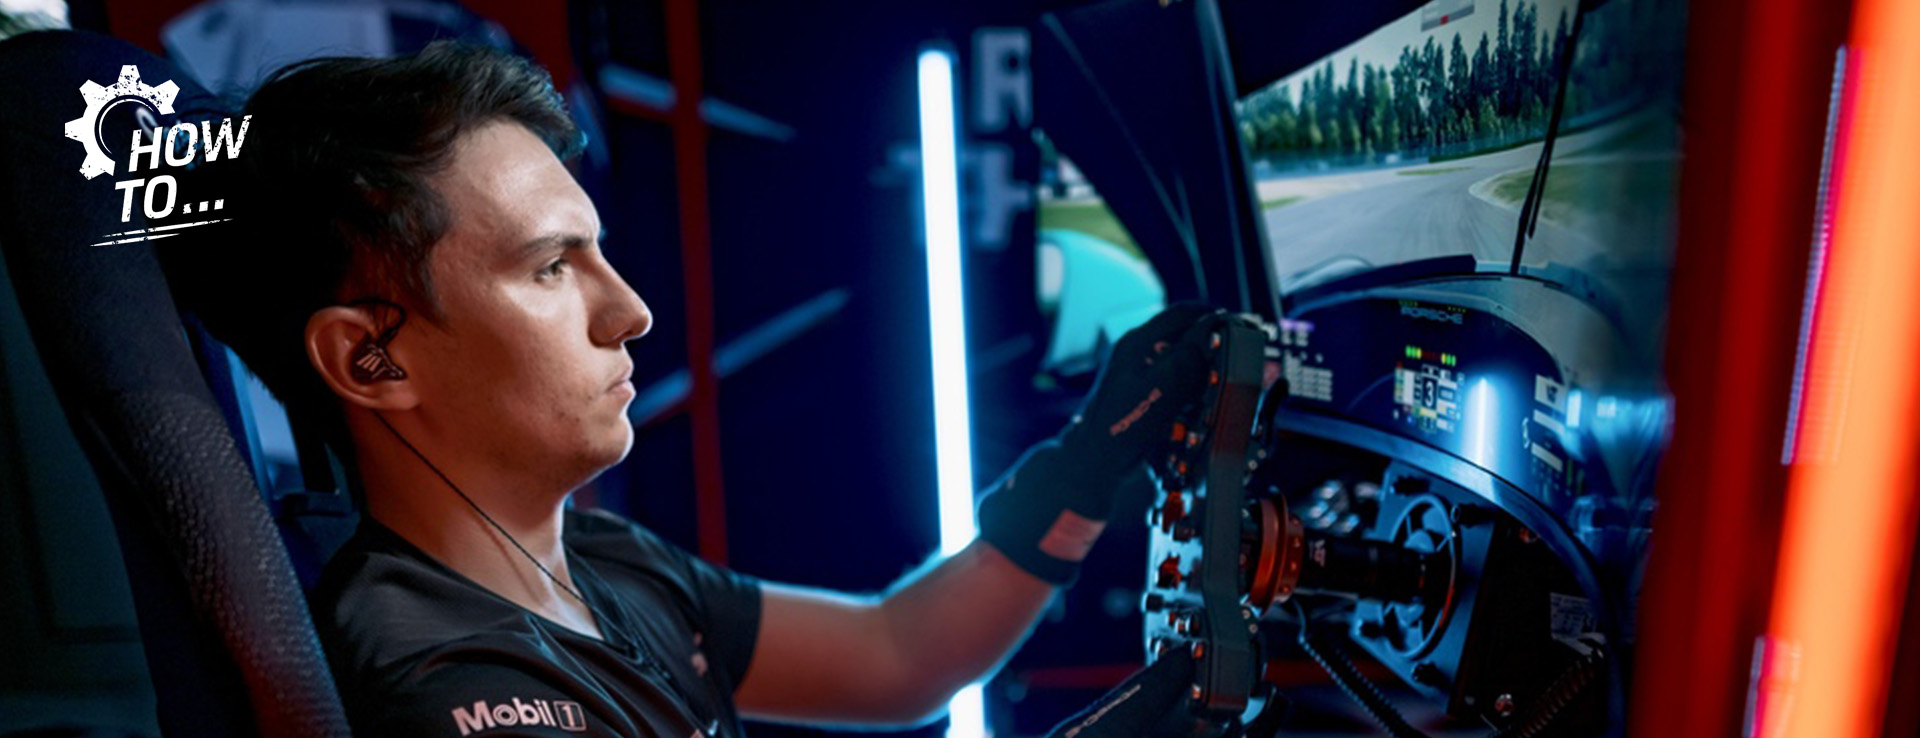 Porsche Coanda Esports Racing Team driver Josh Rogers at wheel